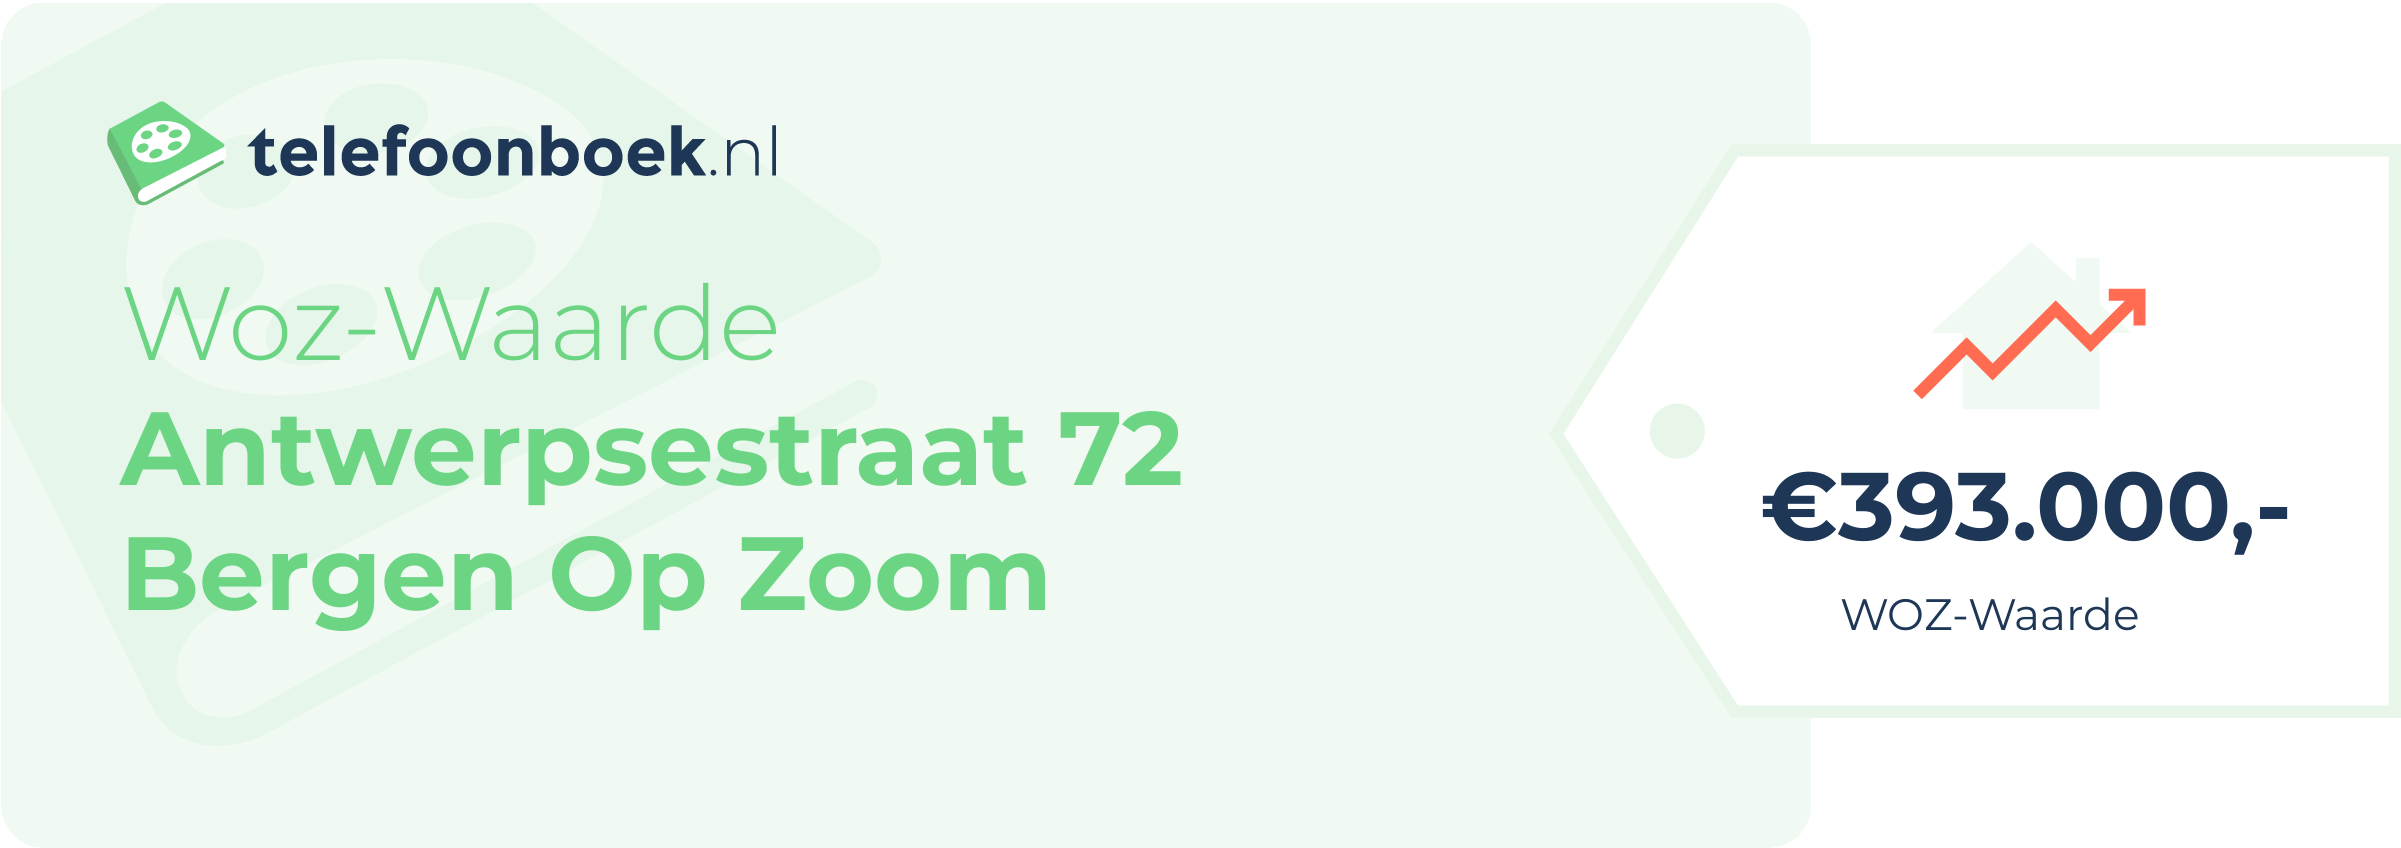 WOZ-waarde Antwerpsestraat 72 Bergen Op Zoom